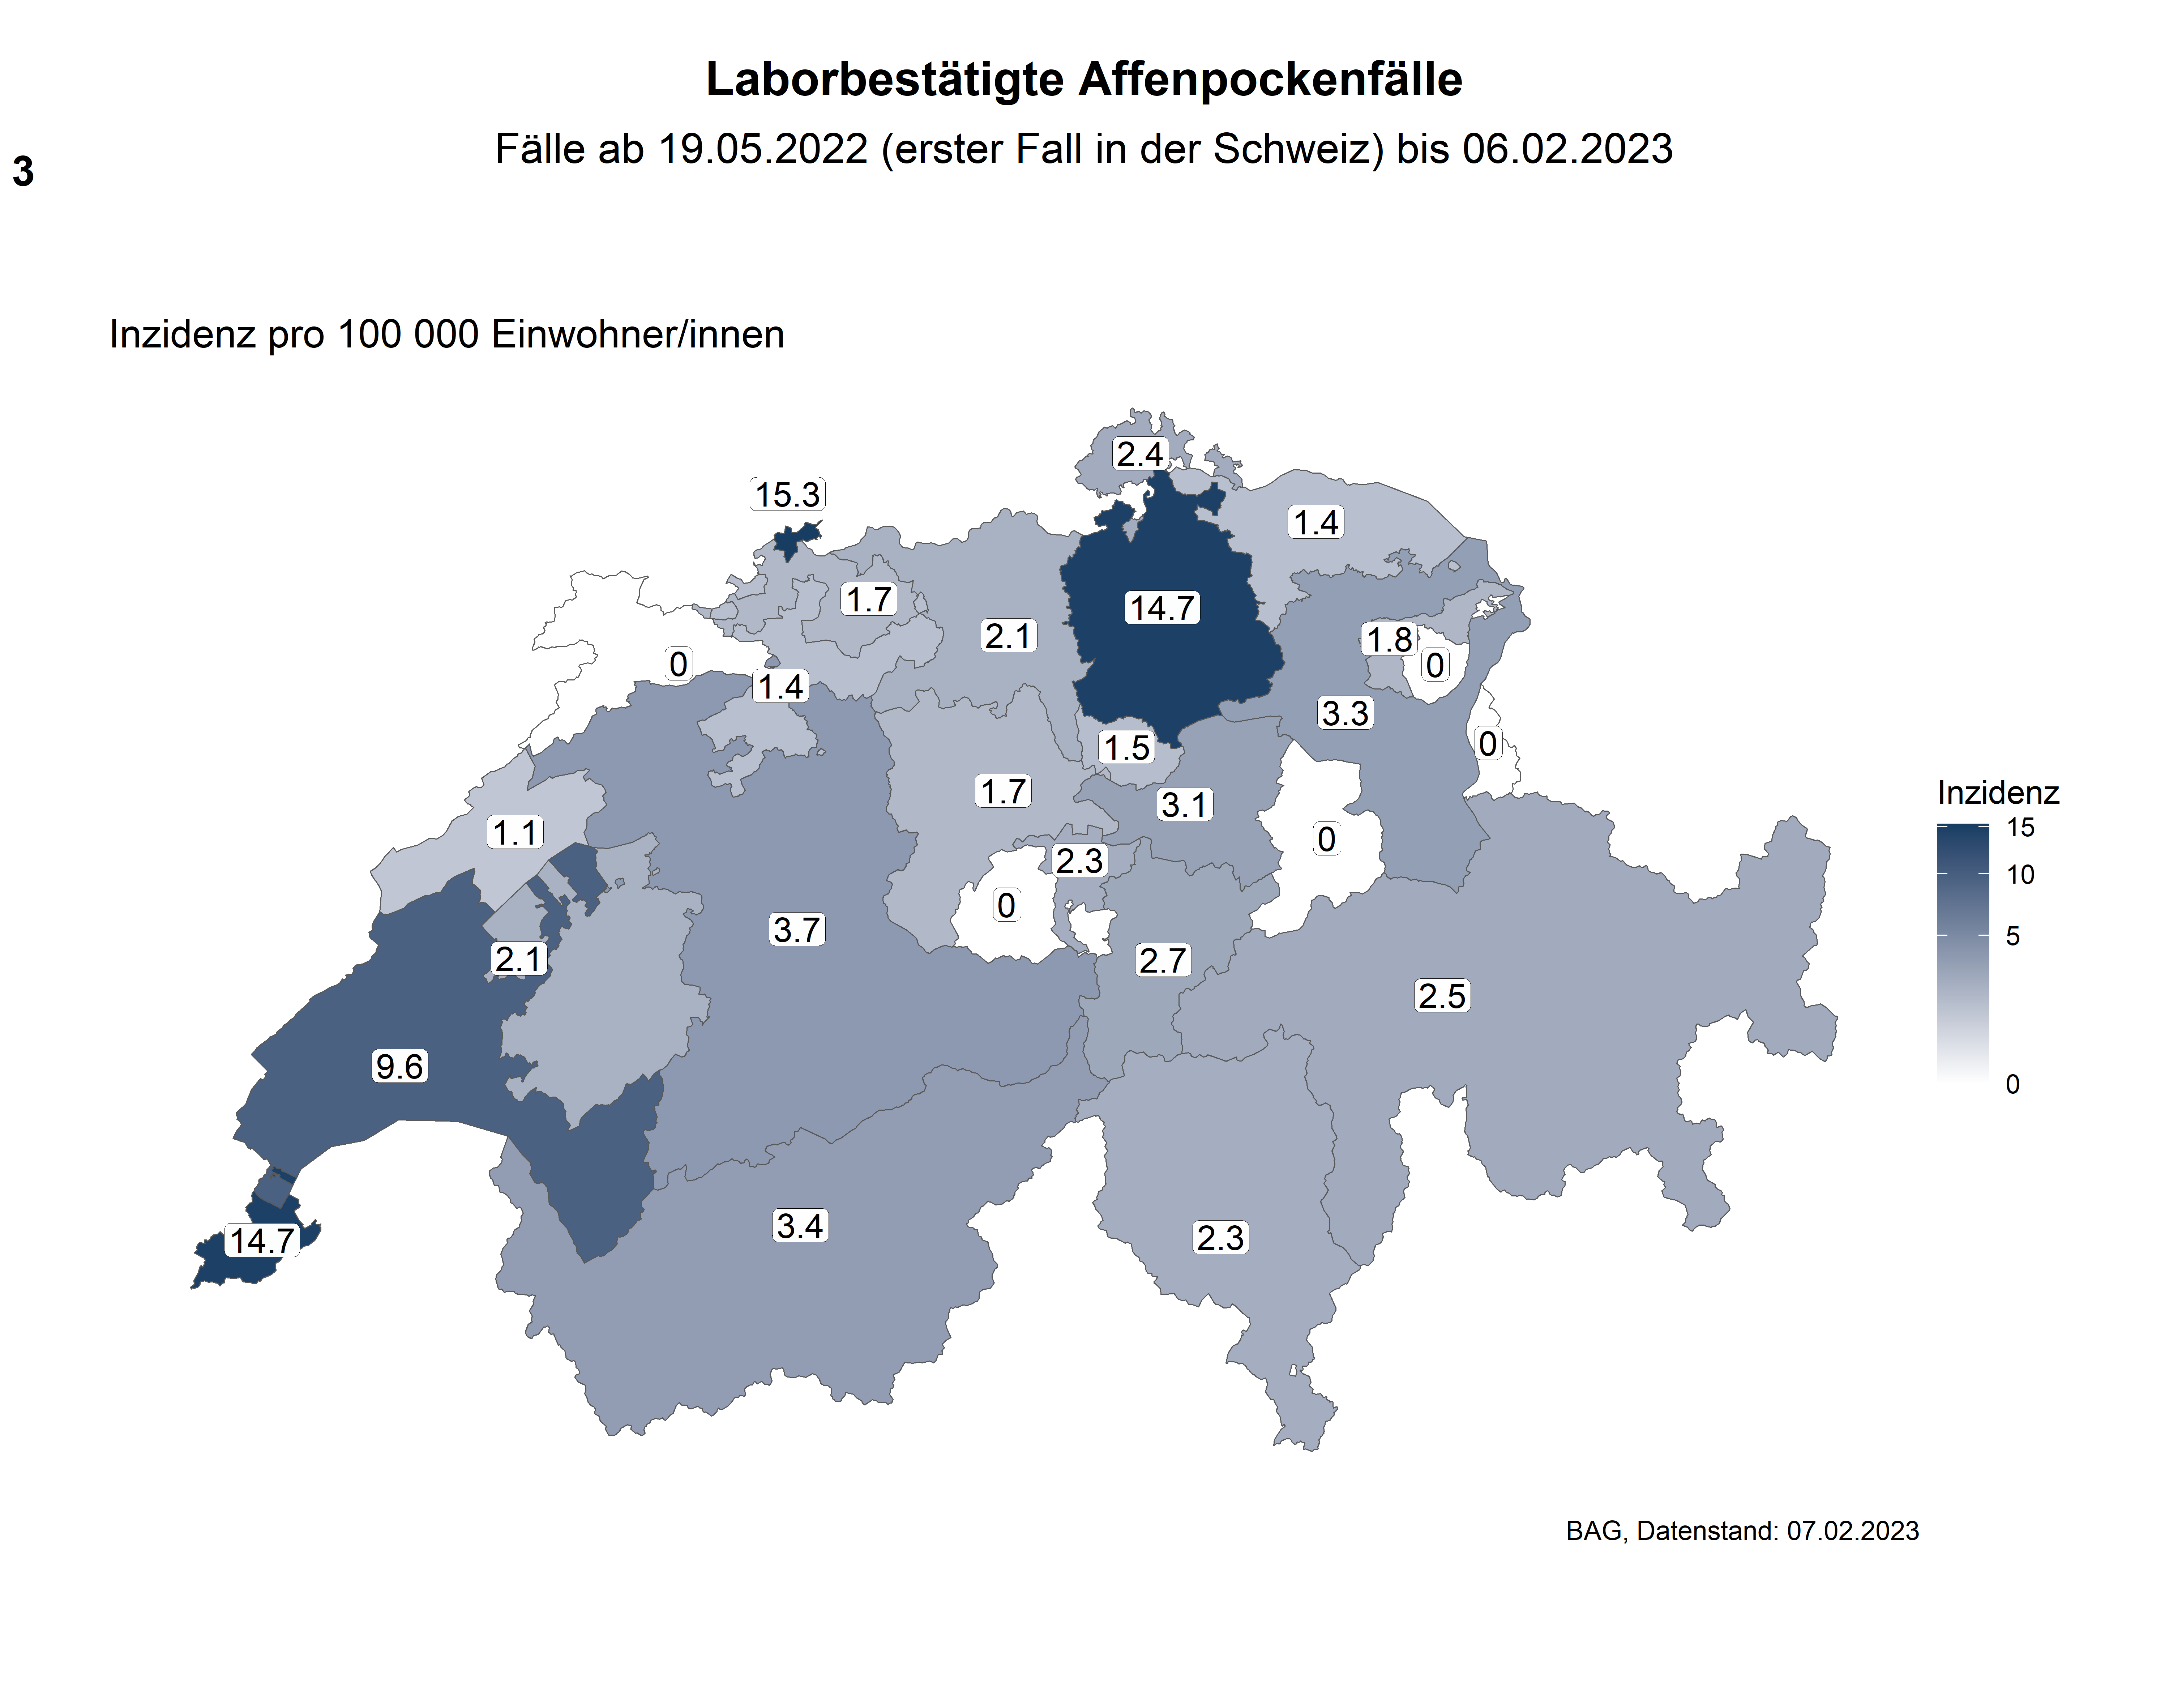 Abbildung 3: Geographische Verteilung der laborbestätigten Affenpocken-Fälle in der Schweiz nach kantonalen Inzidenzen (Fälle pro 100 000 Einwohner/innen) (zugehörige Daten in der Excel-Tabelle)